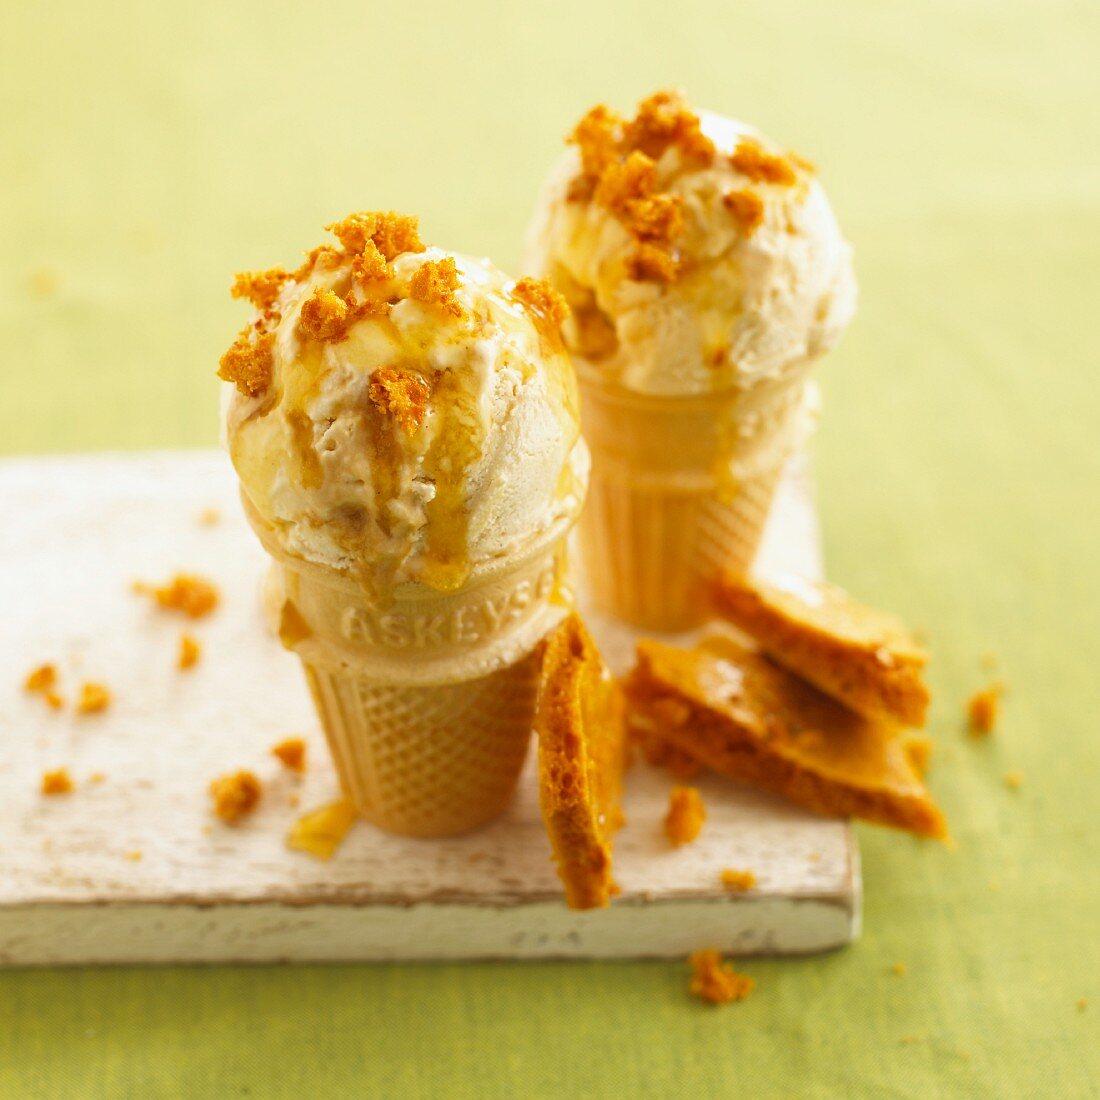 Ice cream cones with honeycomb ice cream